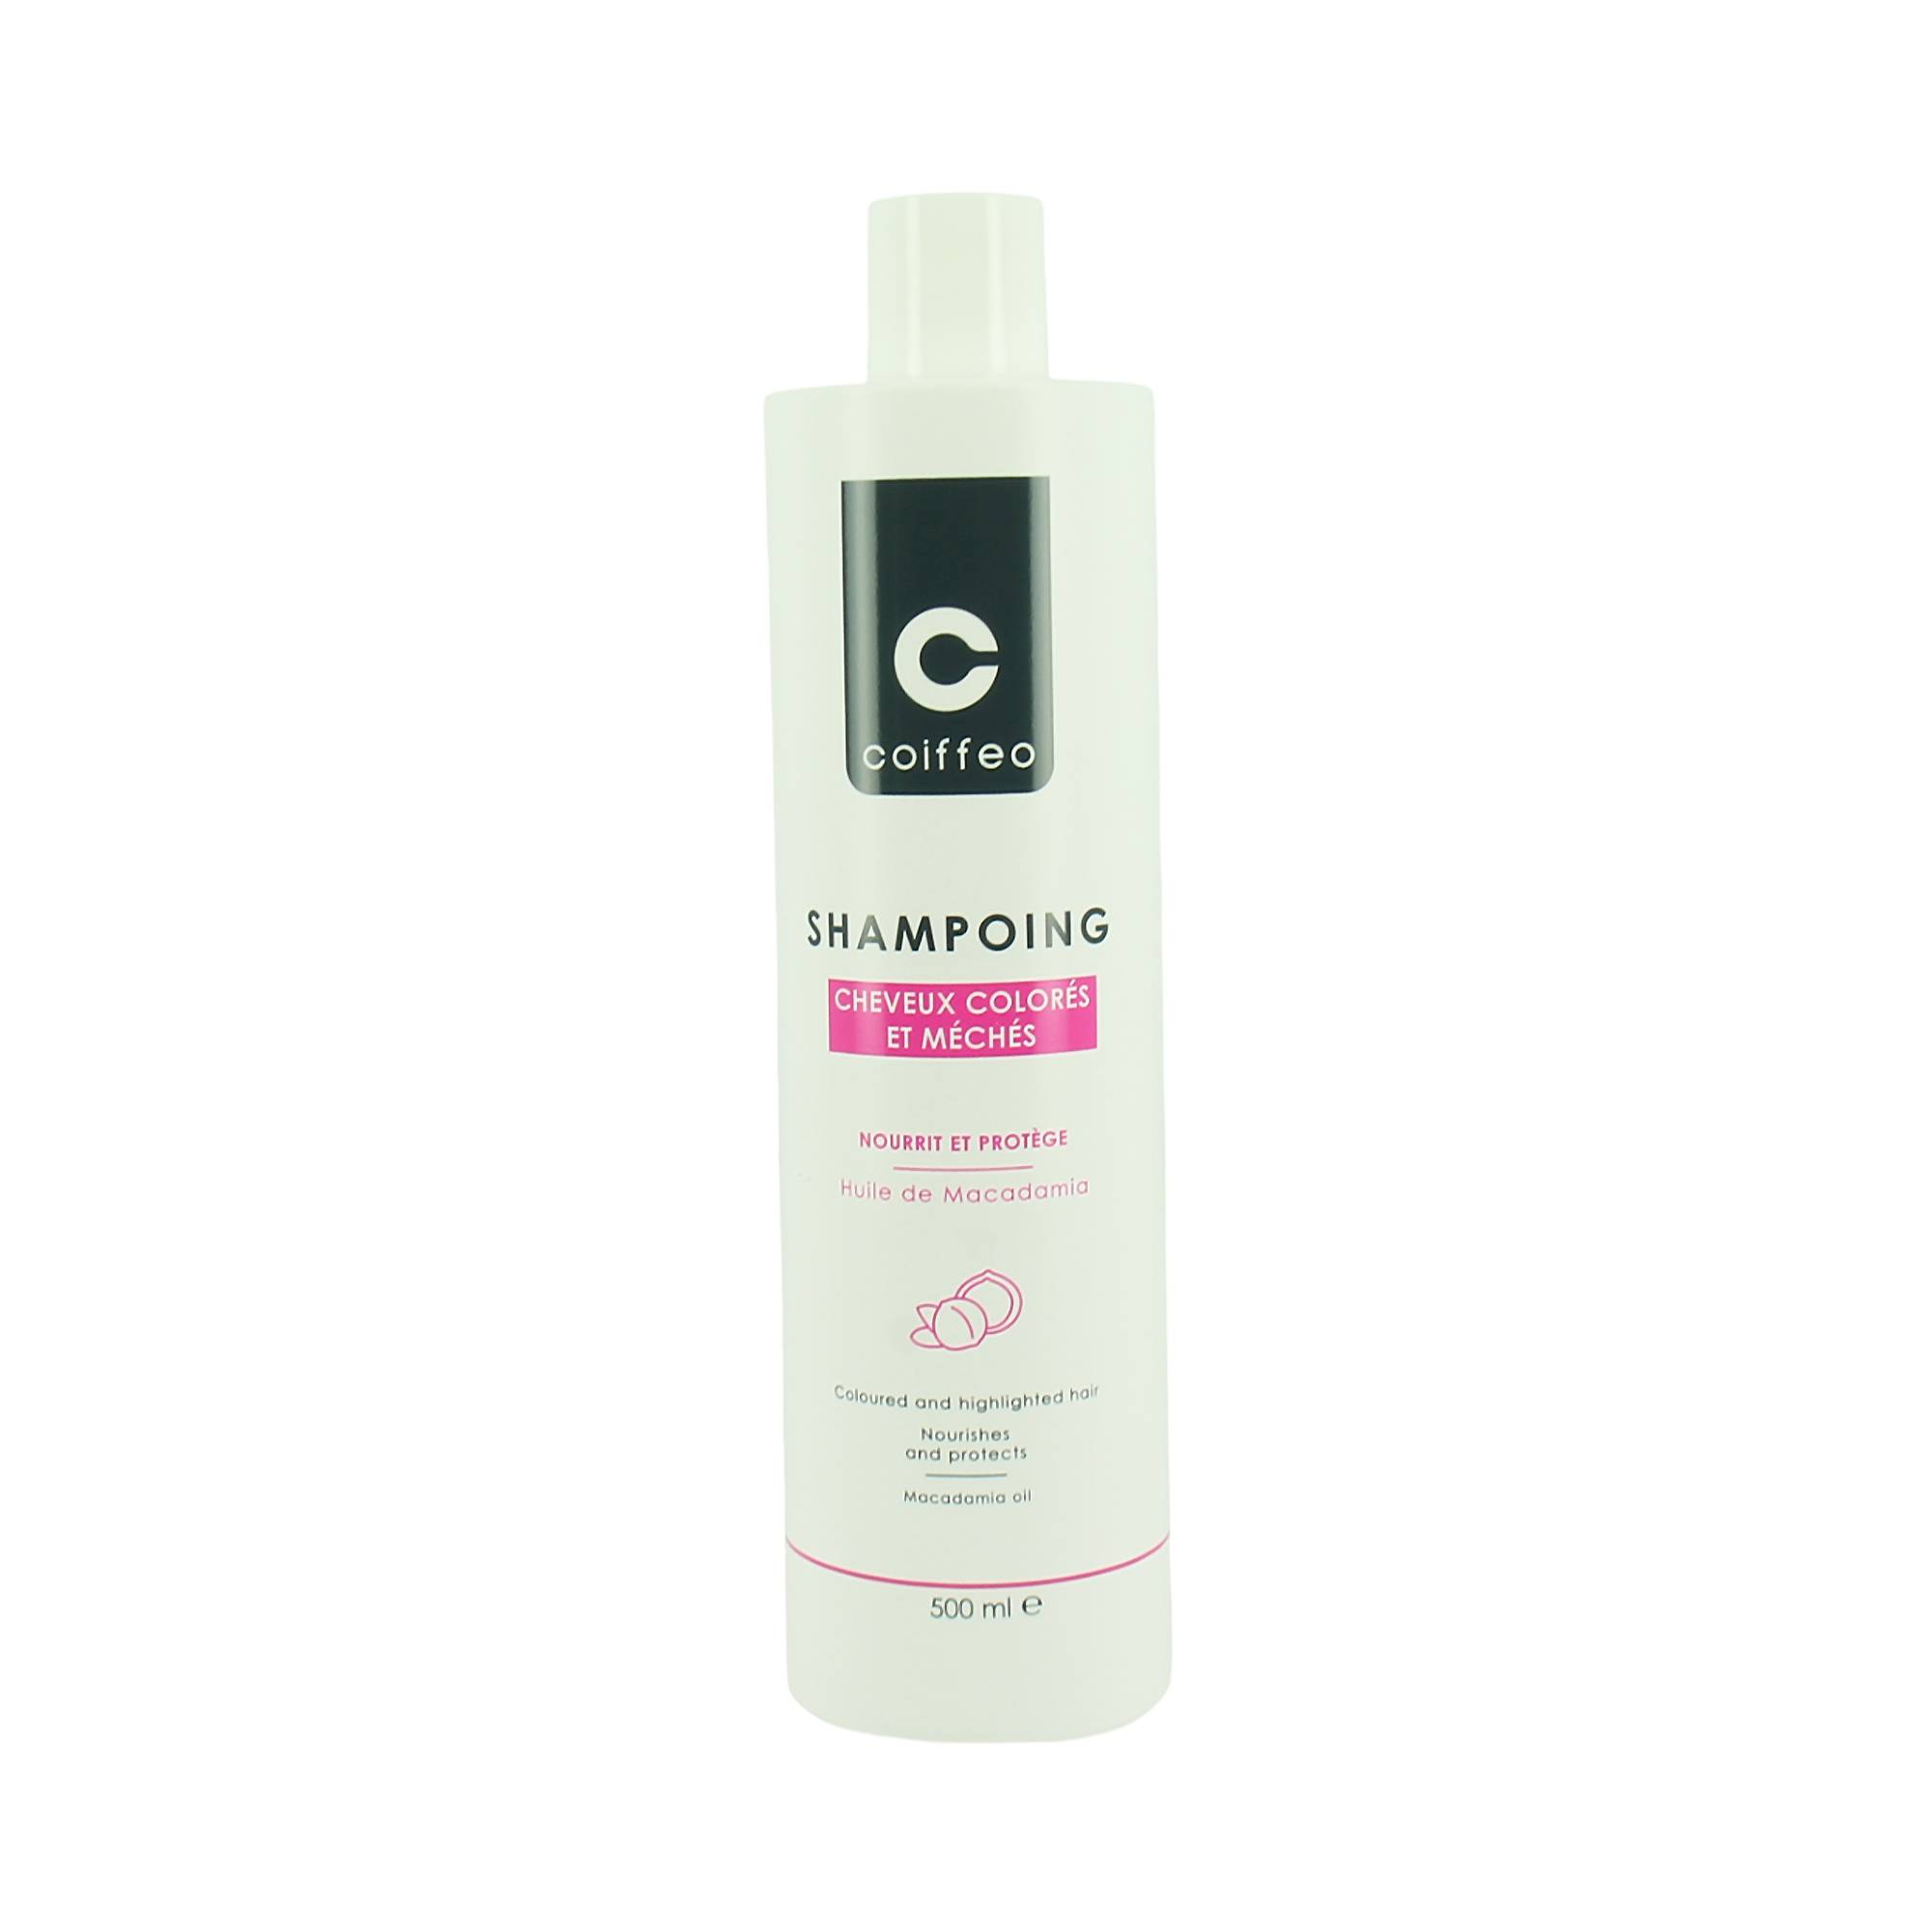 Shampooing cheveux colorés de la marque Coiffeo Contenance 500ml - 2